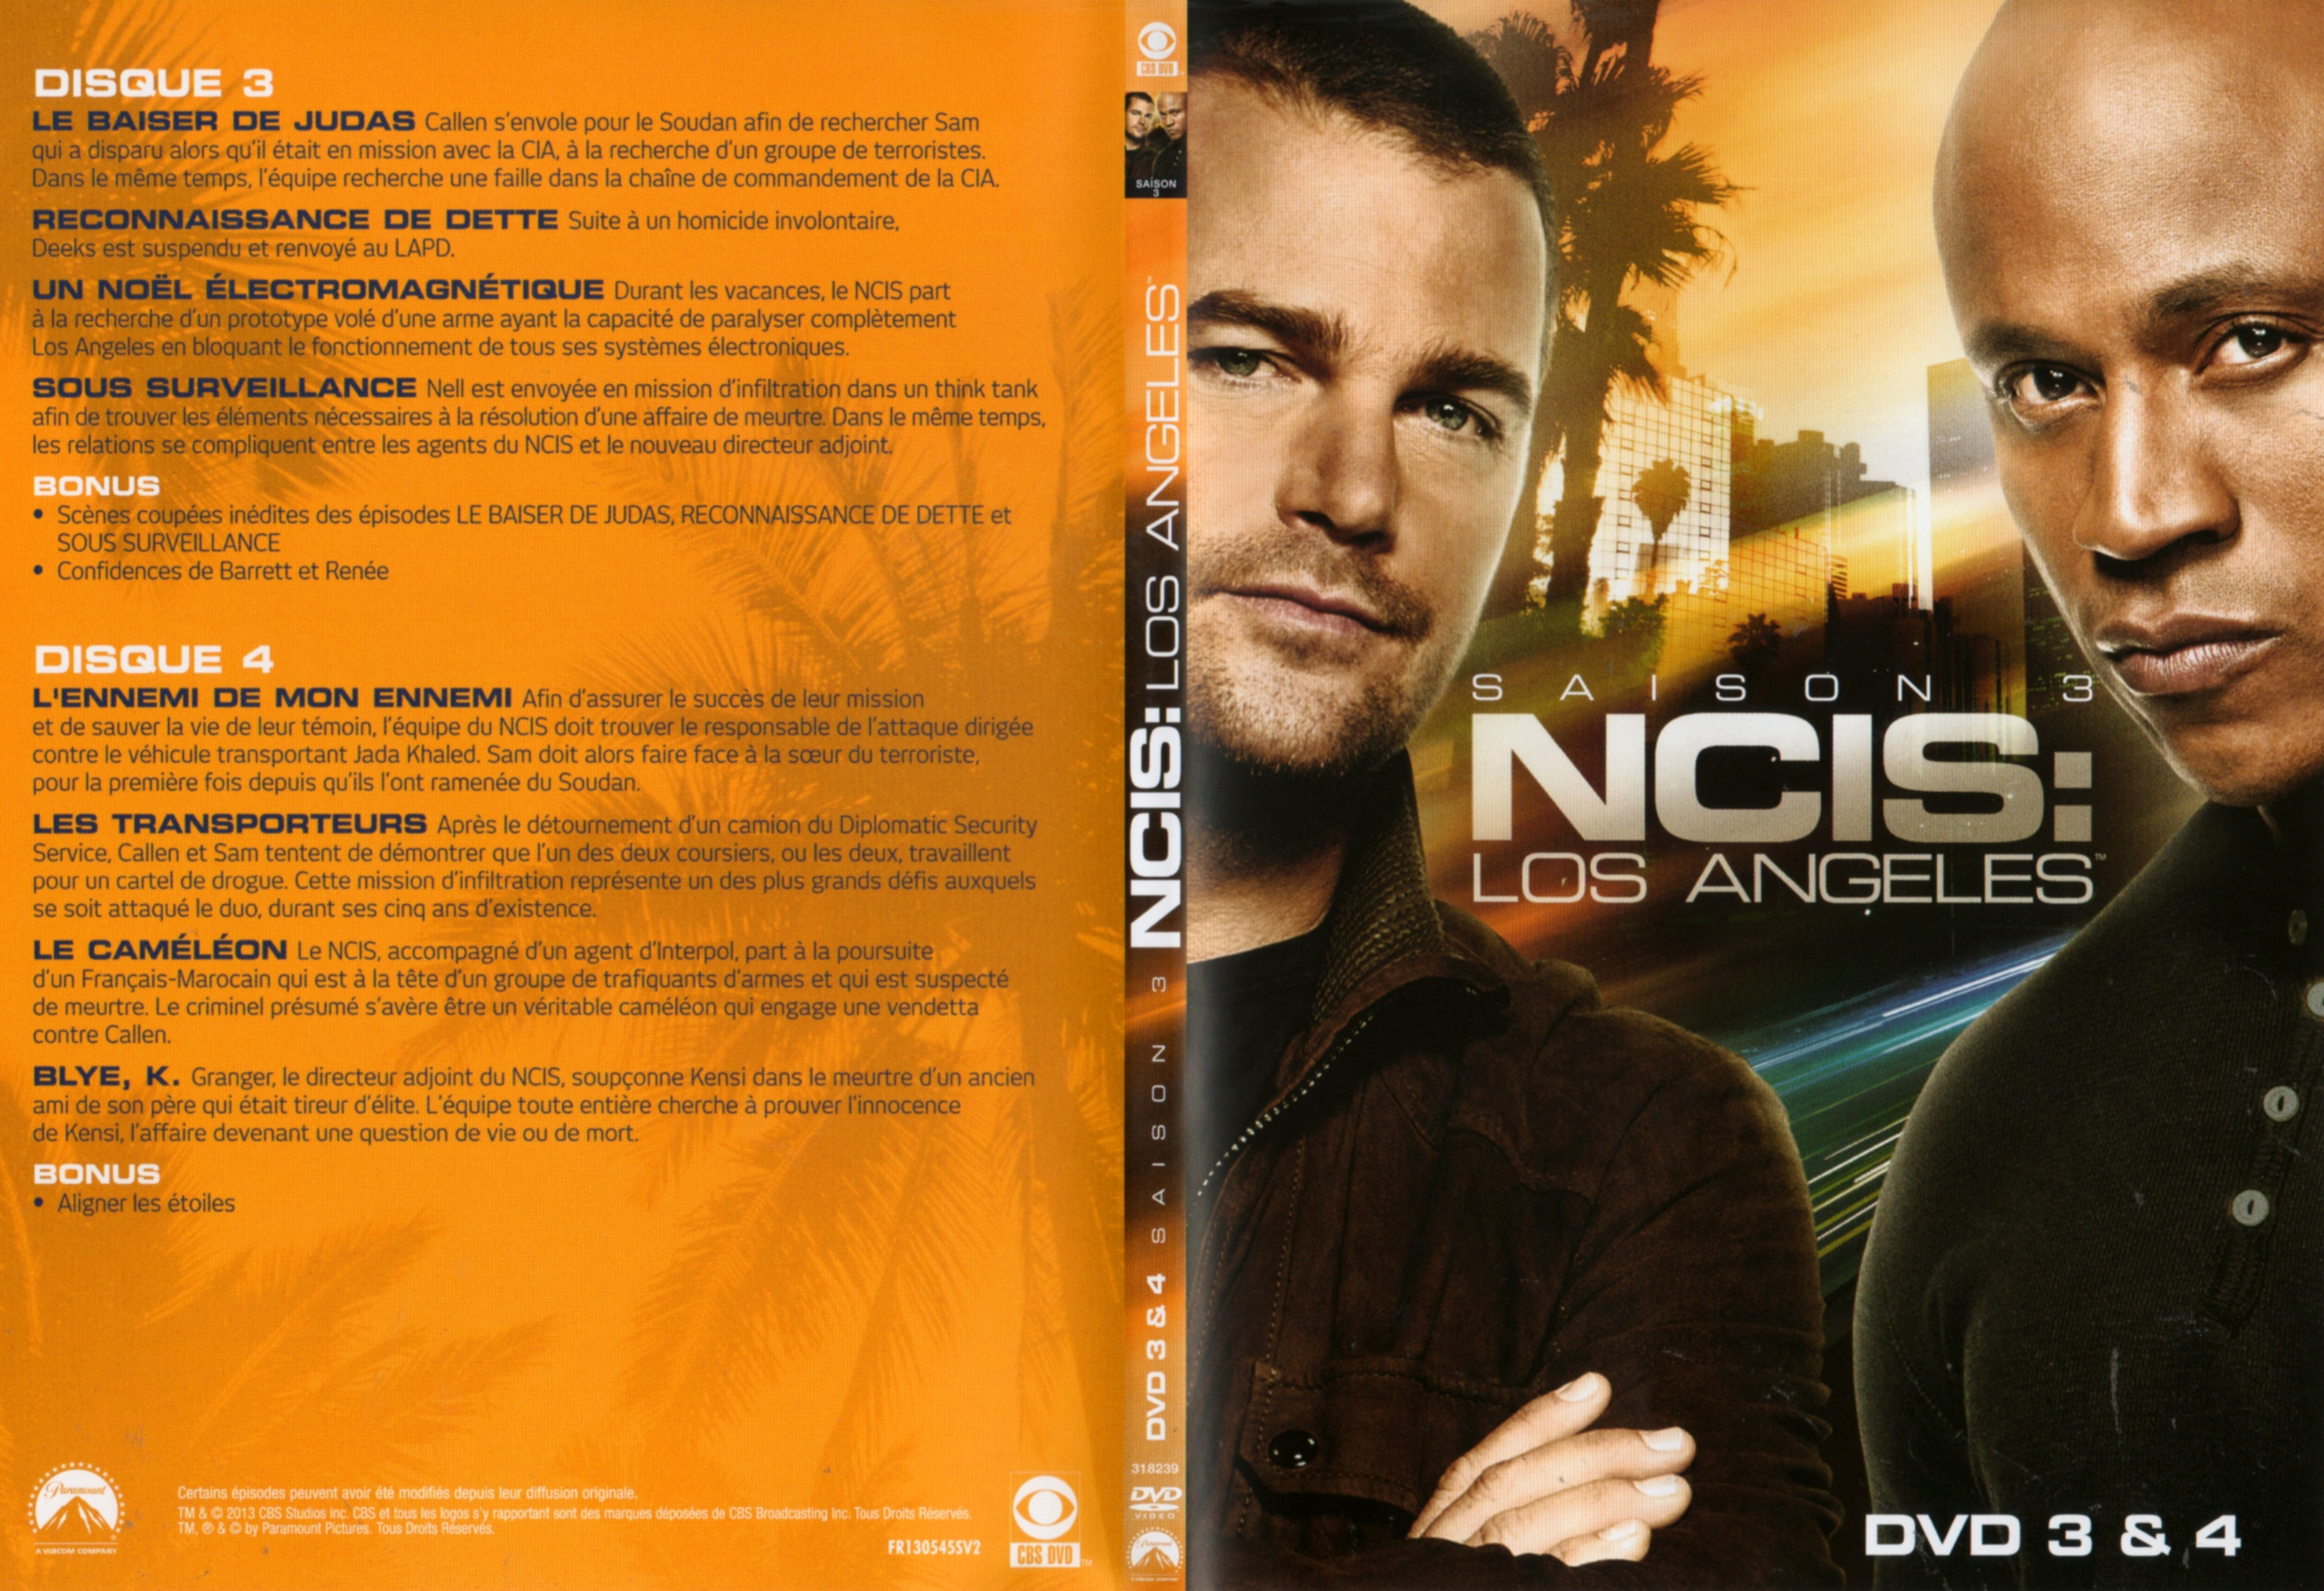 Jaquette DVD NCIS Los Angeles Saison 3 DVD 2